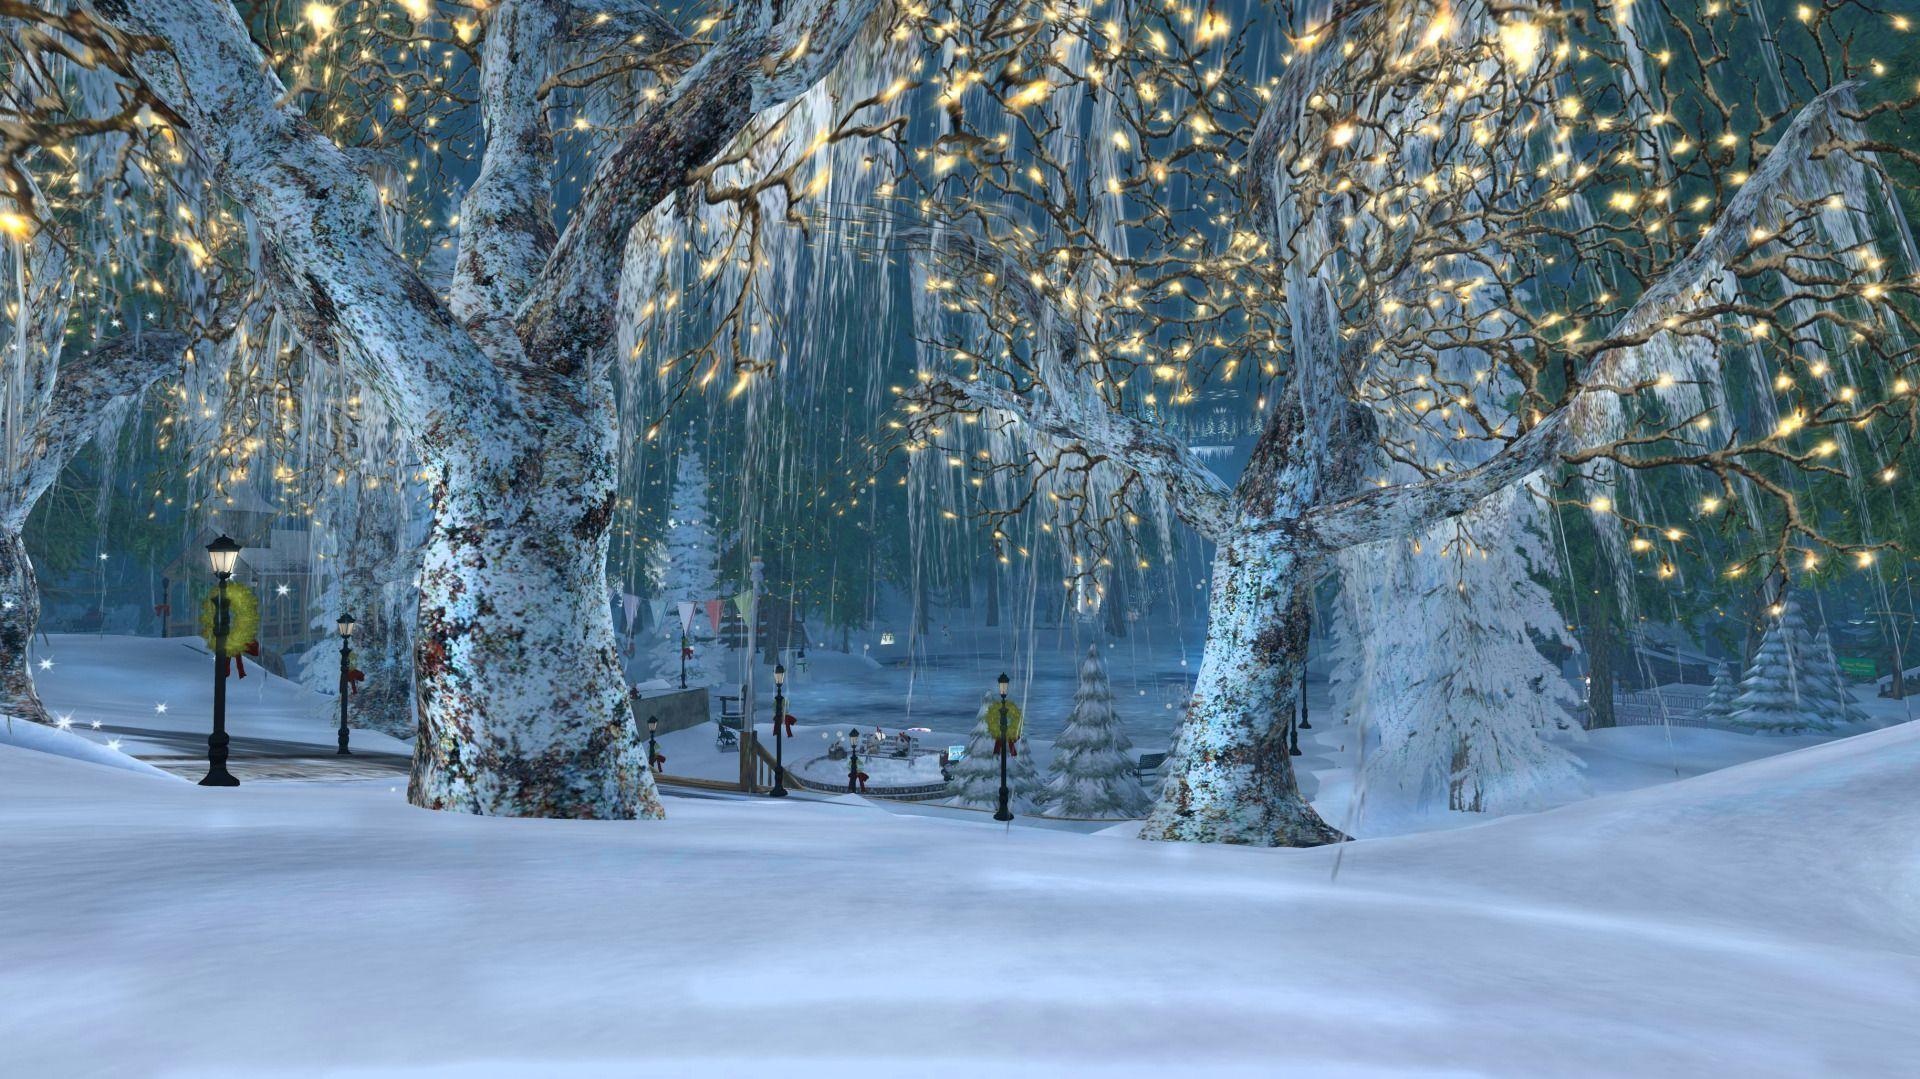 Descubrir 169+ imagen winter holiday background images free ...